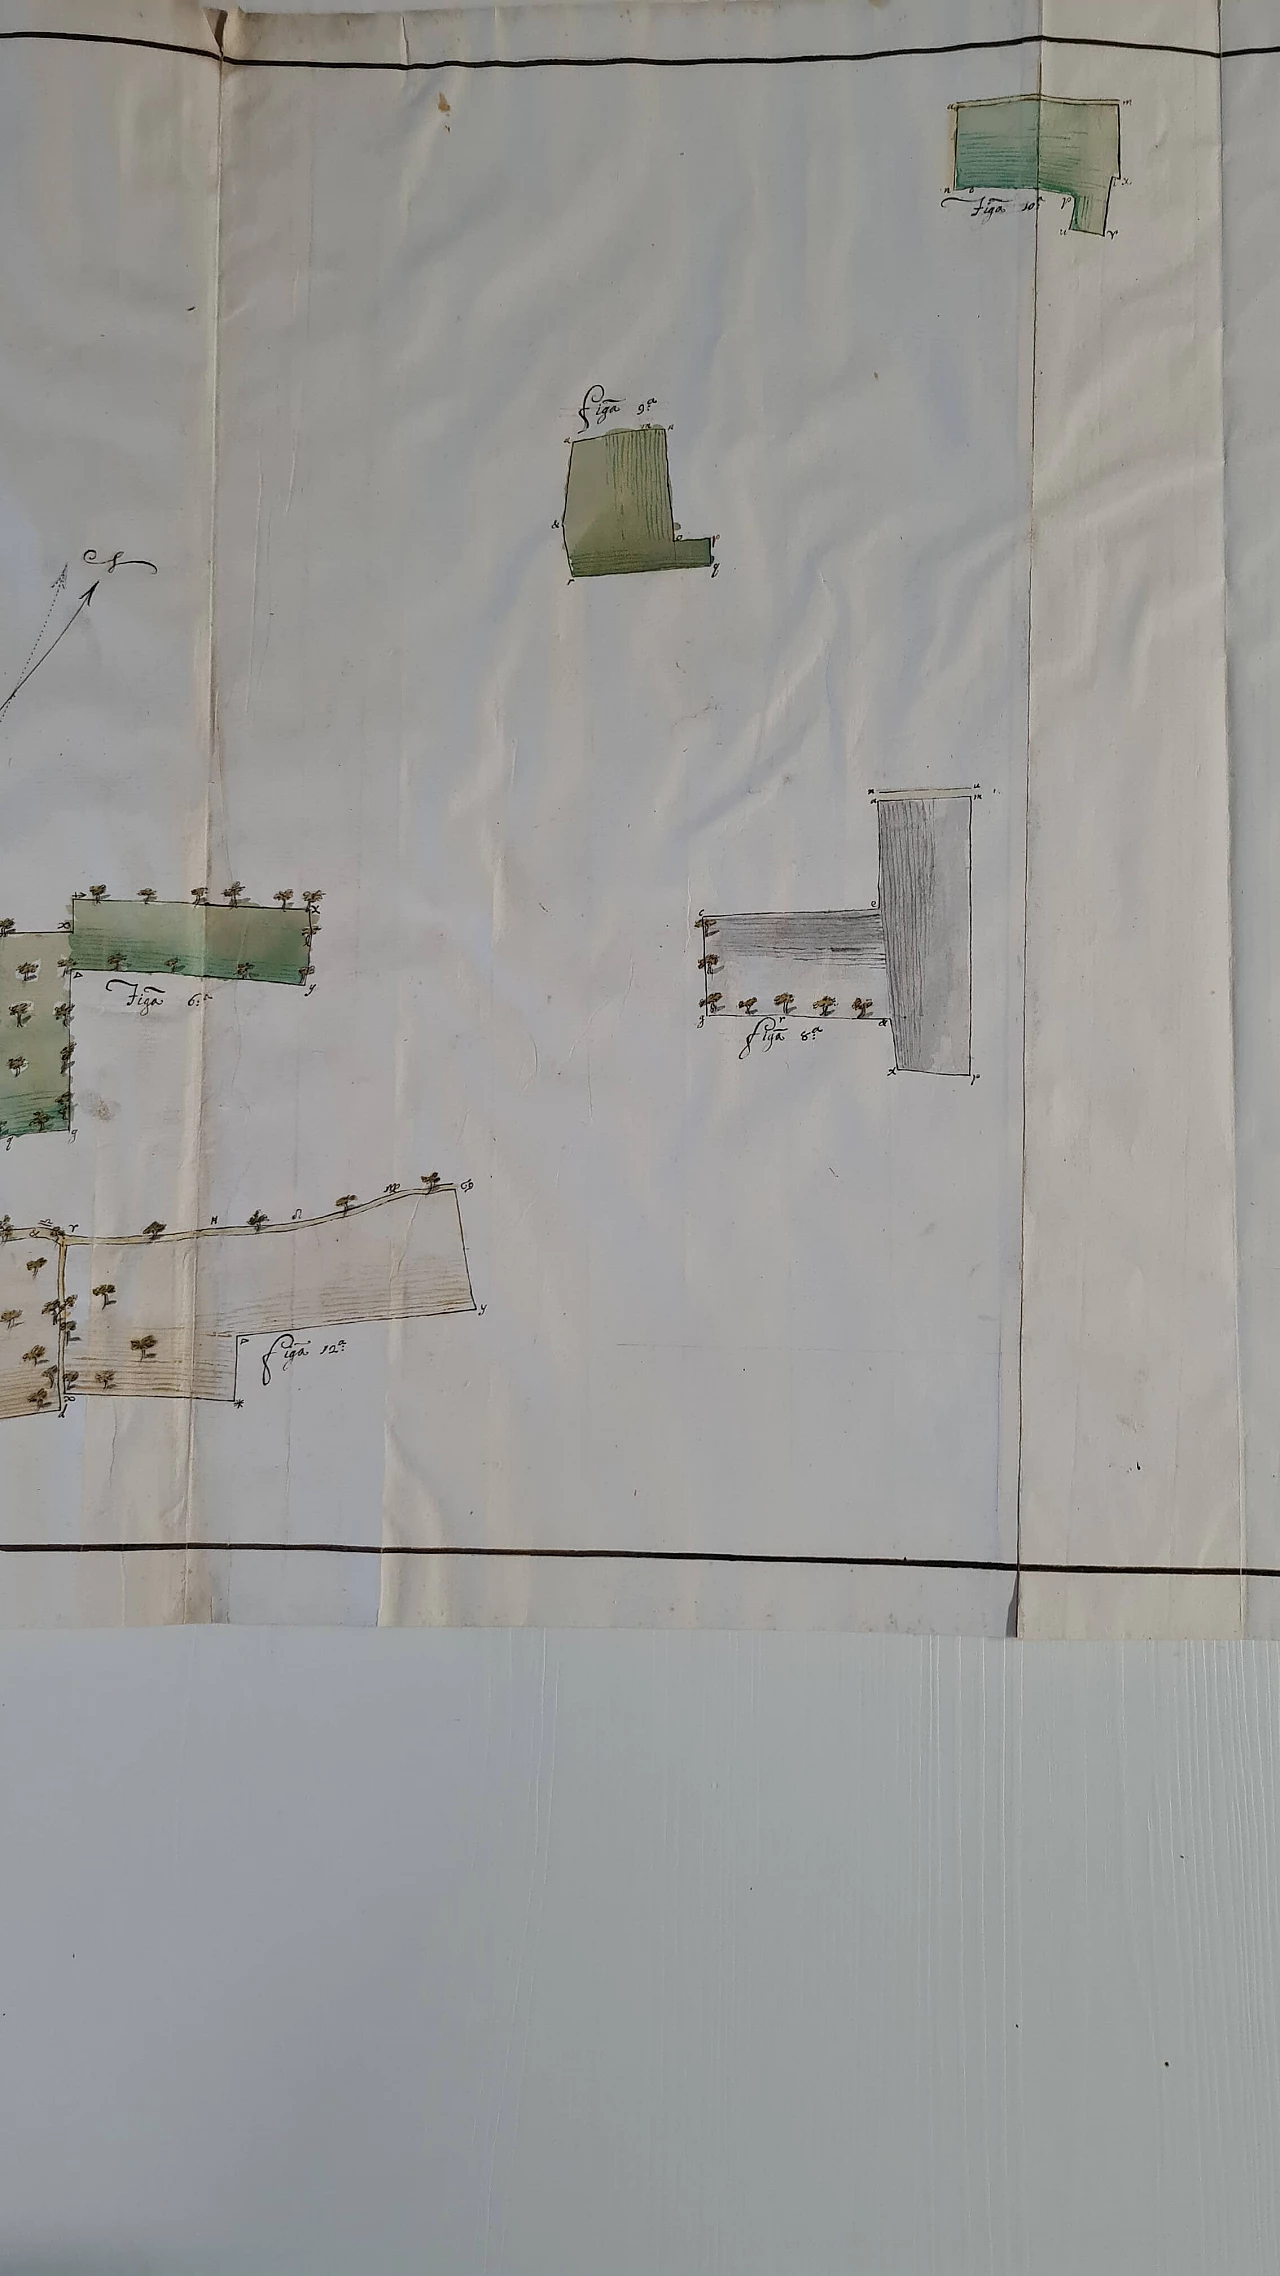 Mappa catastale su carta vergellata e filigranata, seconda metà del '700 4